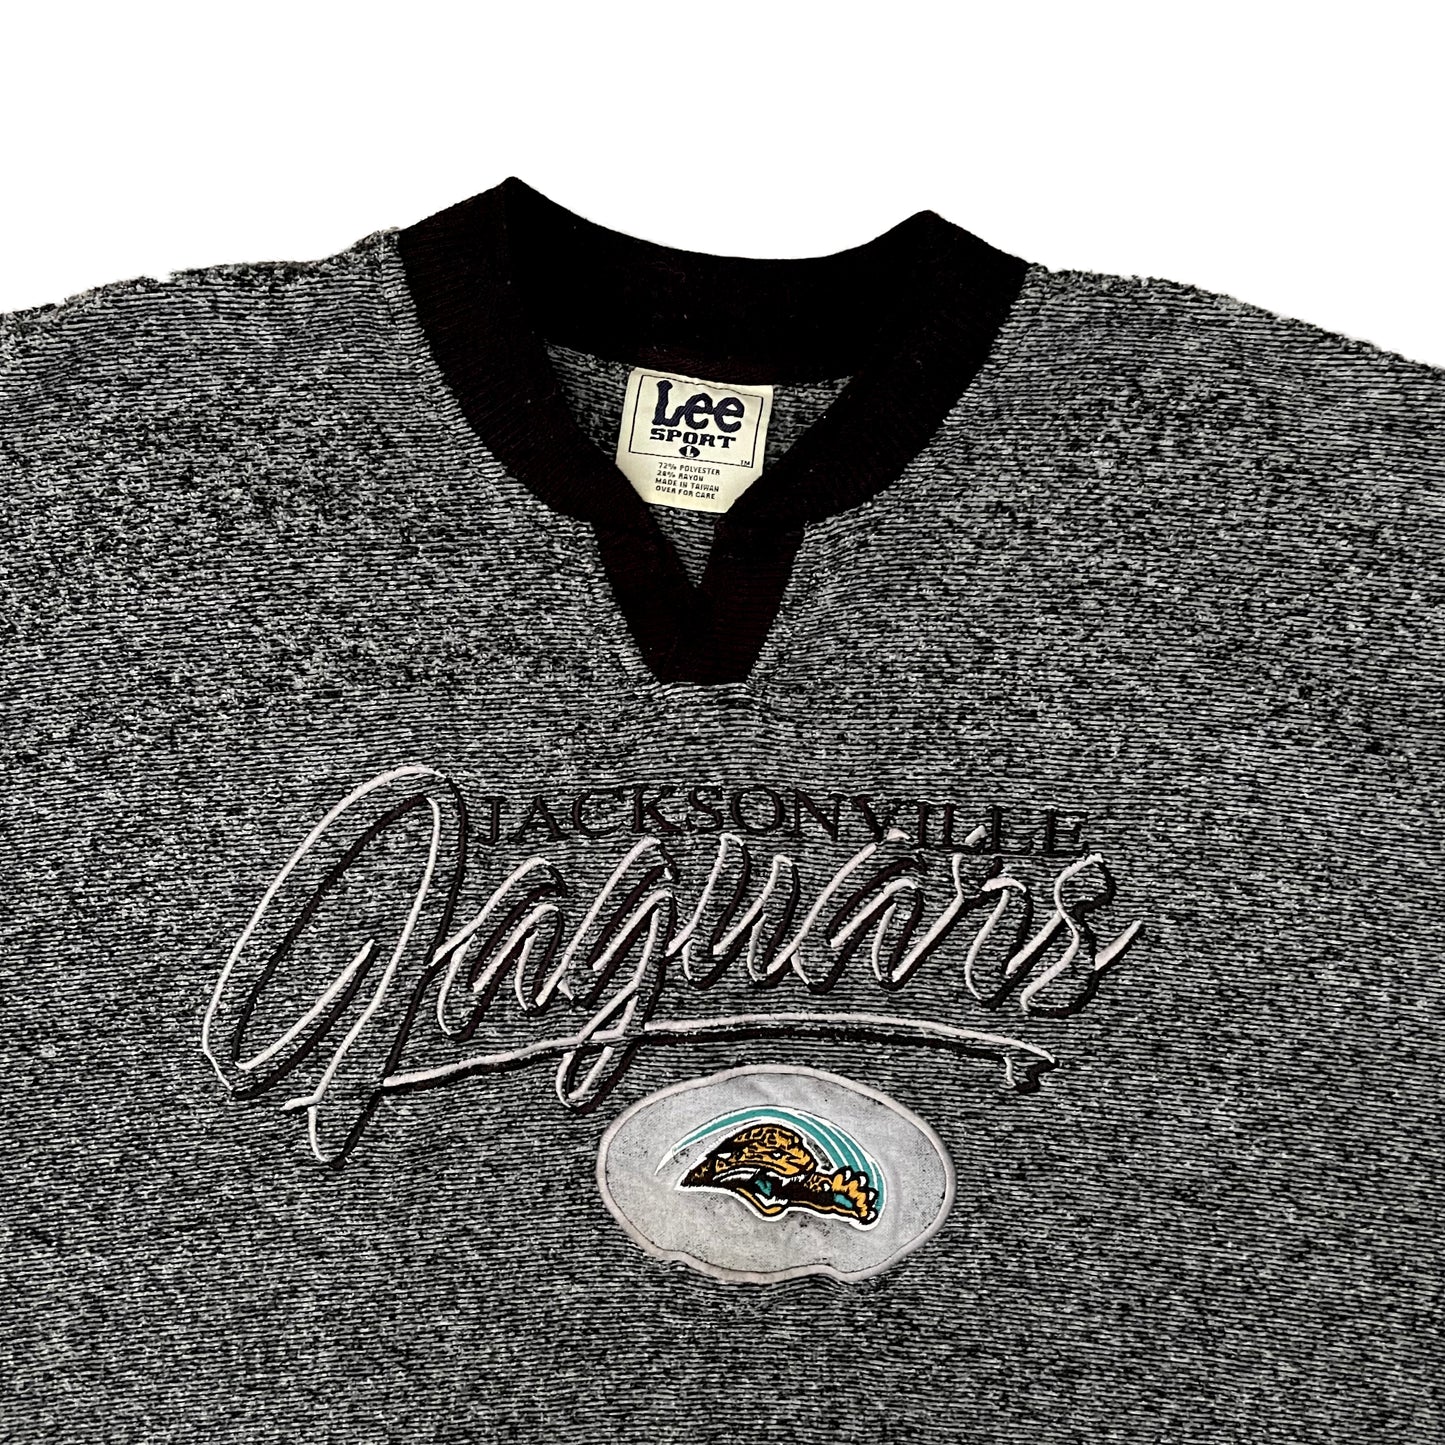 Vintage Jacksonville Jaguars Embroidered sweatshirt size LARGE